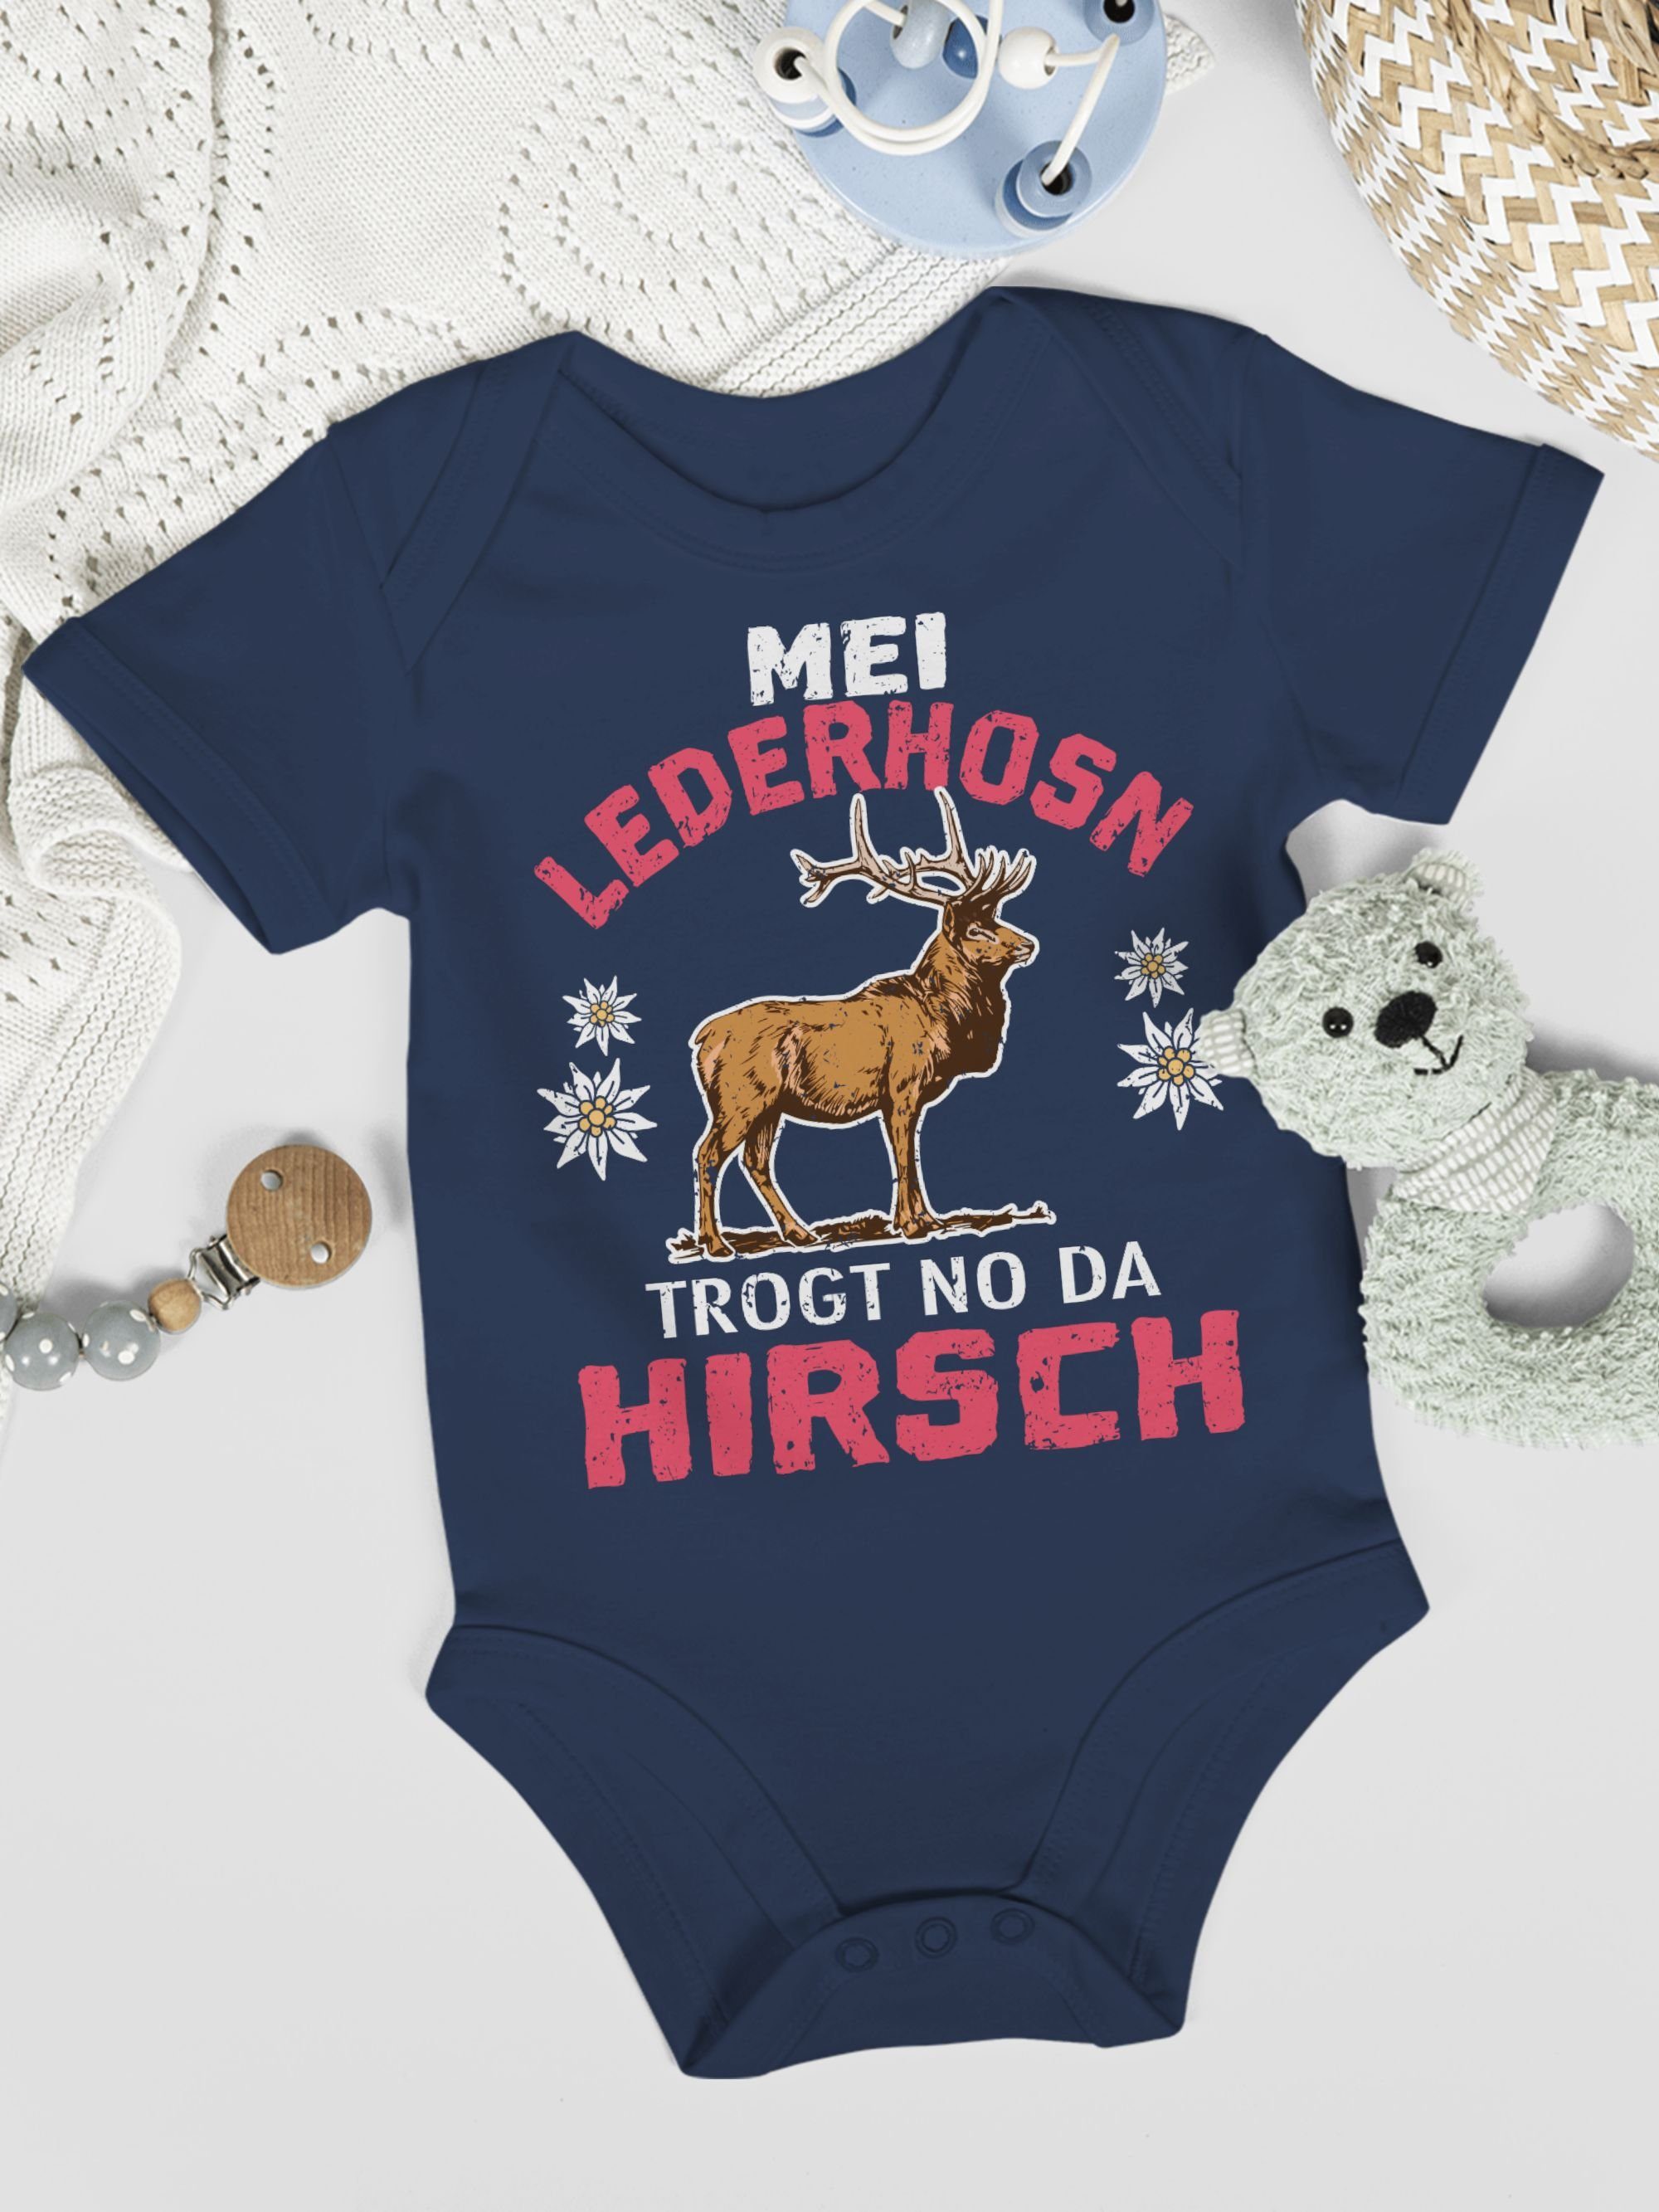 für Mei da Mode trogt Lederhosn Oktoberfest - Hirsch 1 Navy Blau Shirtbody no Shirtracer Outfit weiß/rot Baby